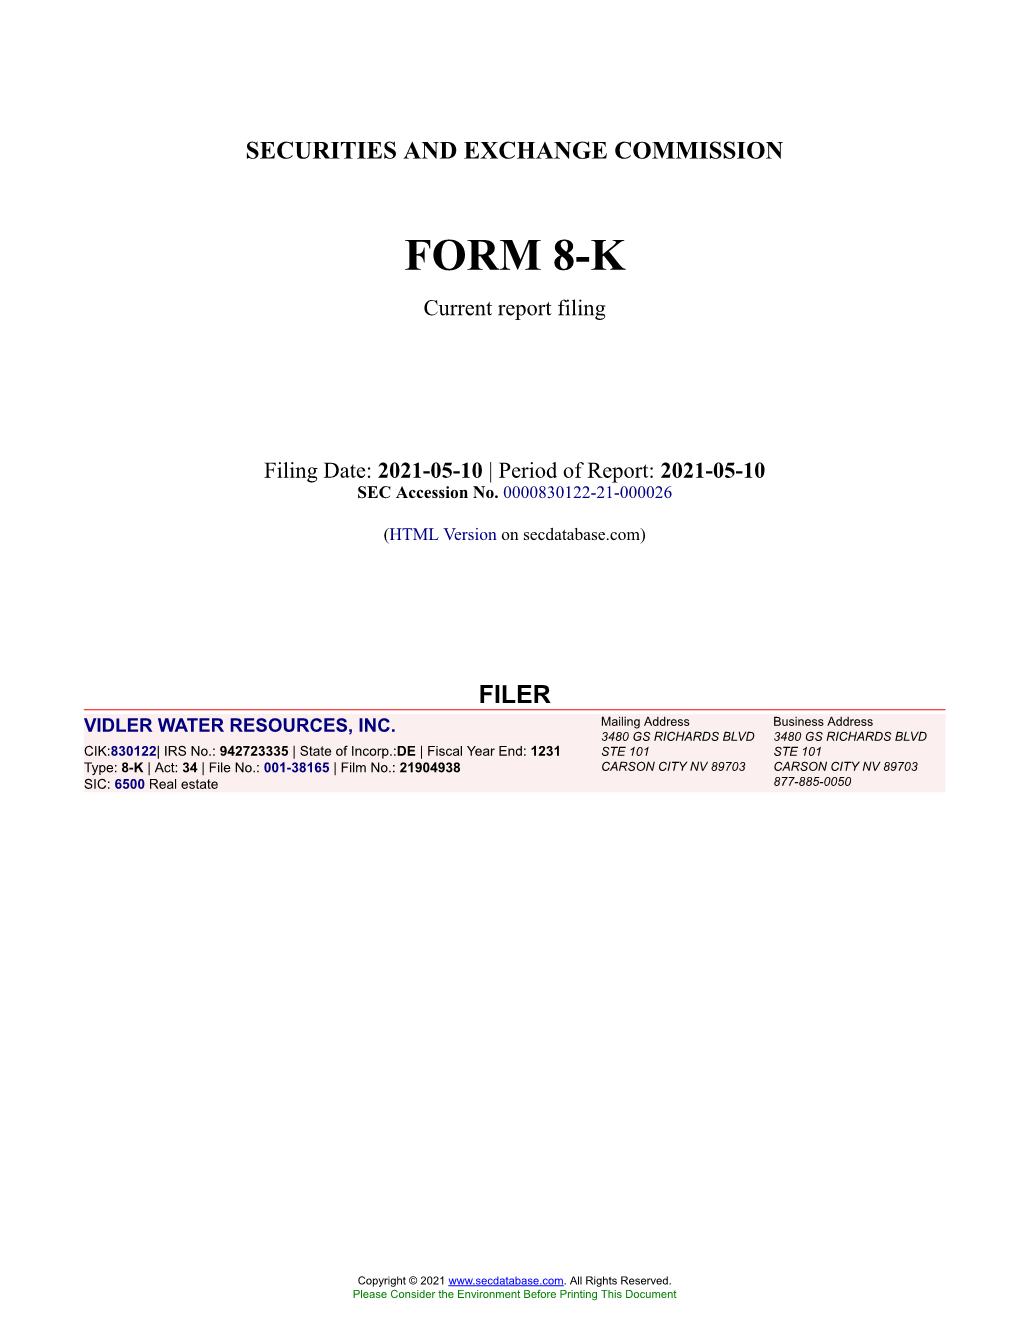 VIDLER WATER RESOURCES, INC. Form 8-K